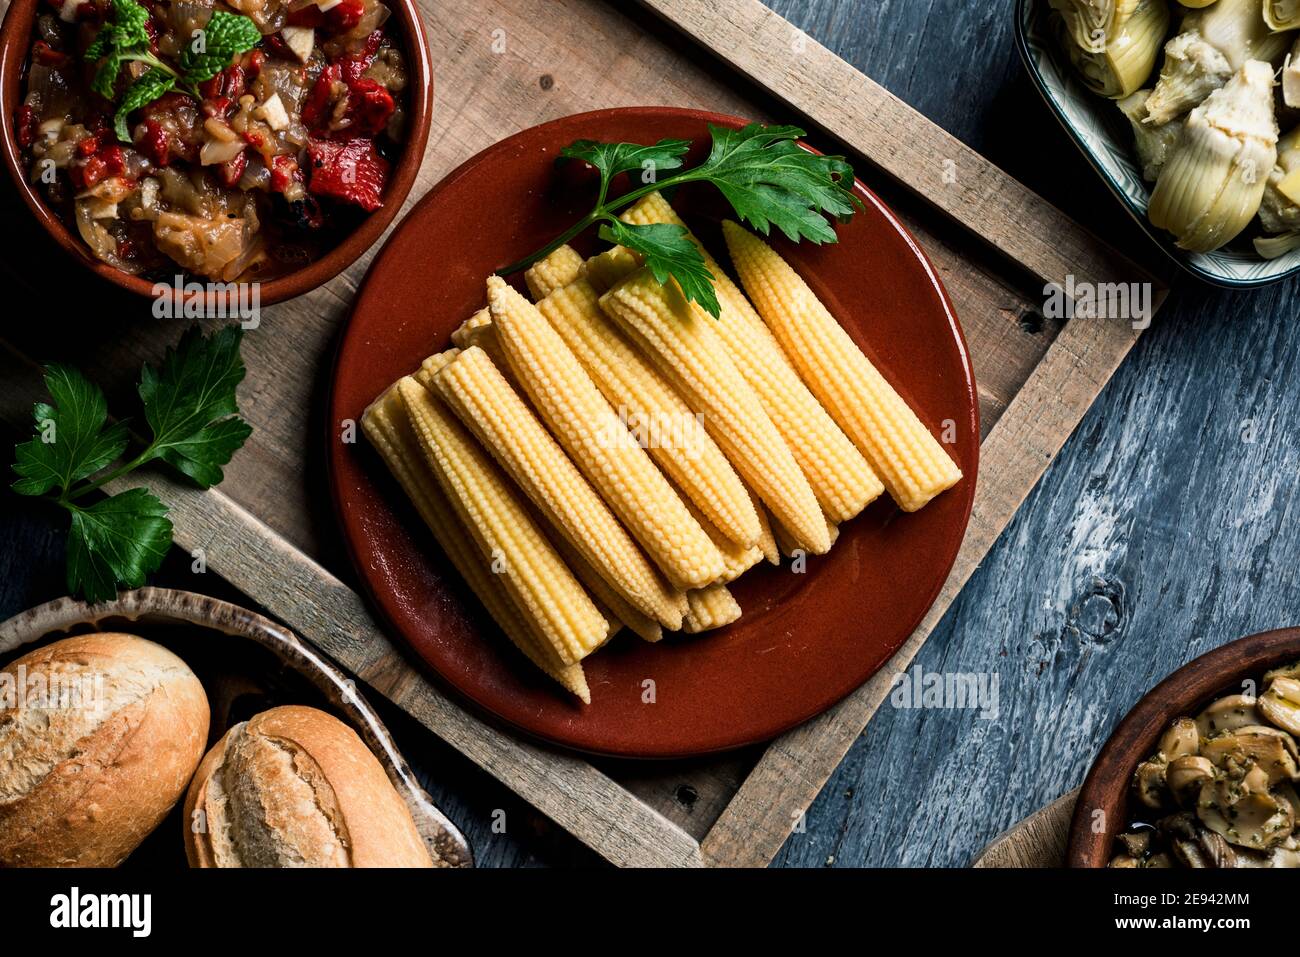 vista ad alto angolo di alcuni cornetti cotti in un piatto su un tavolo accanto ad una ciotola con qualche escalivada spagnola, fatta con verdure arrostite diverse, s Foto Stock